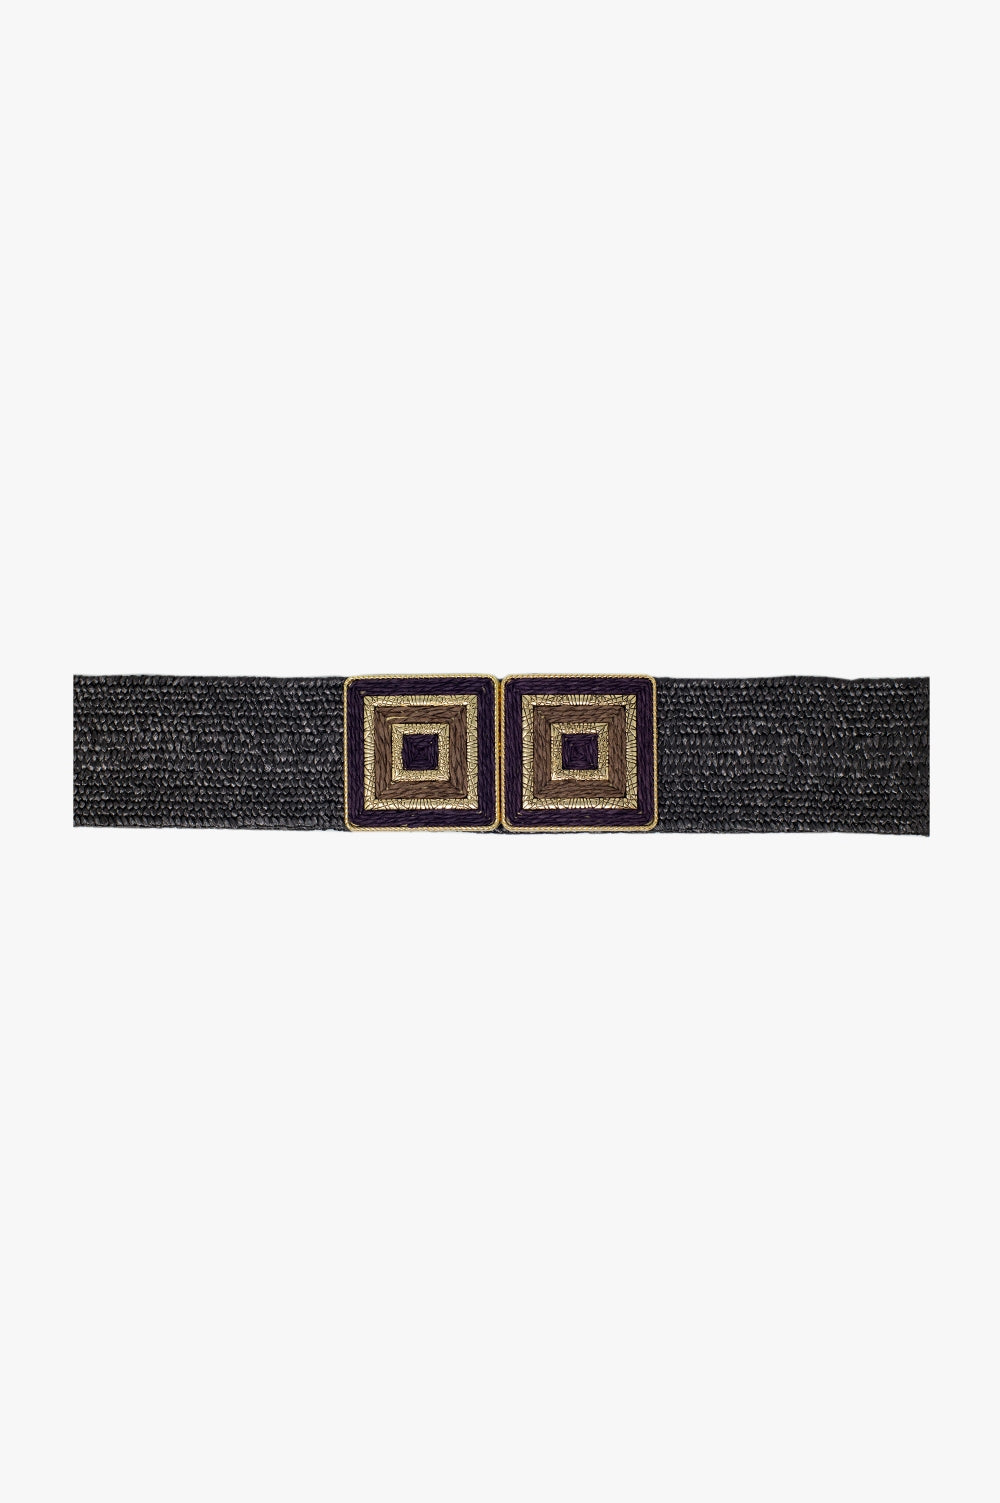 Q2 Cintura marrone intrecciata con fibbia quadrata con dettagli dorati